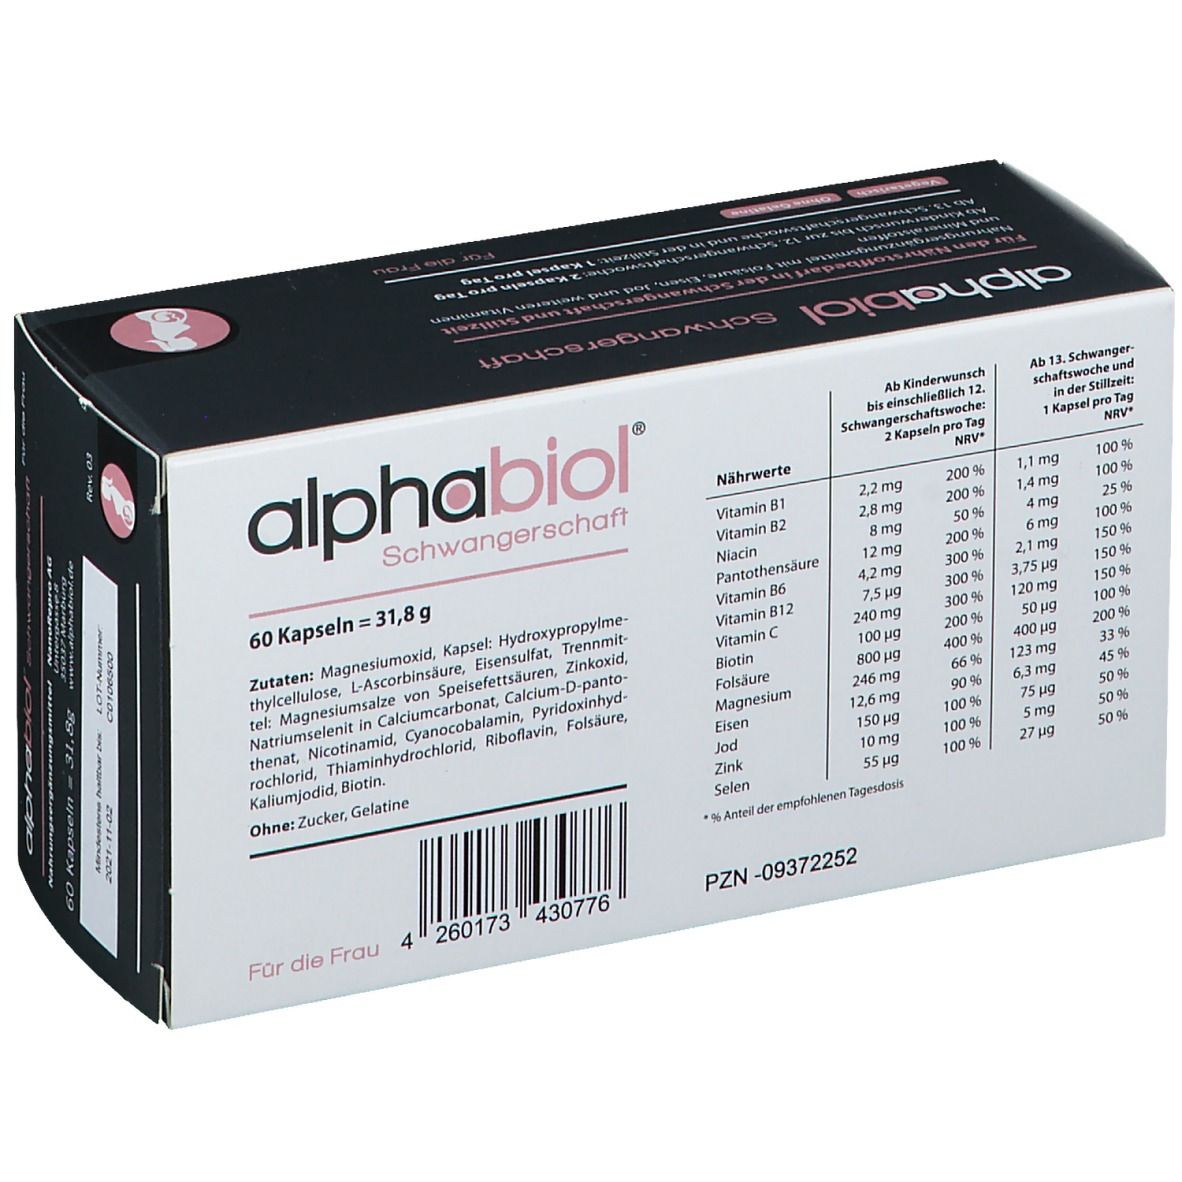 alphabiol® Schwangerschaft für die Frau